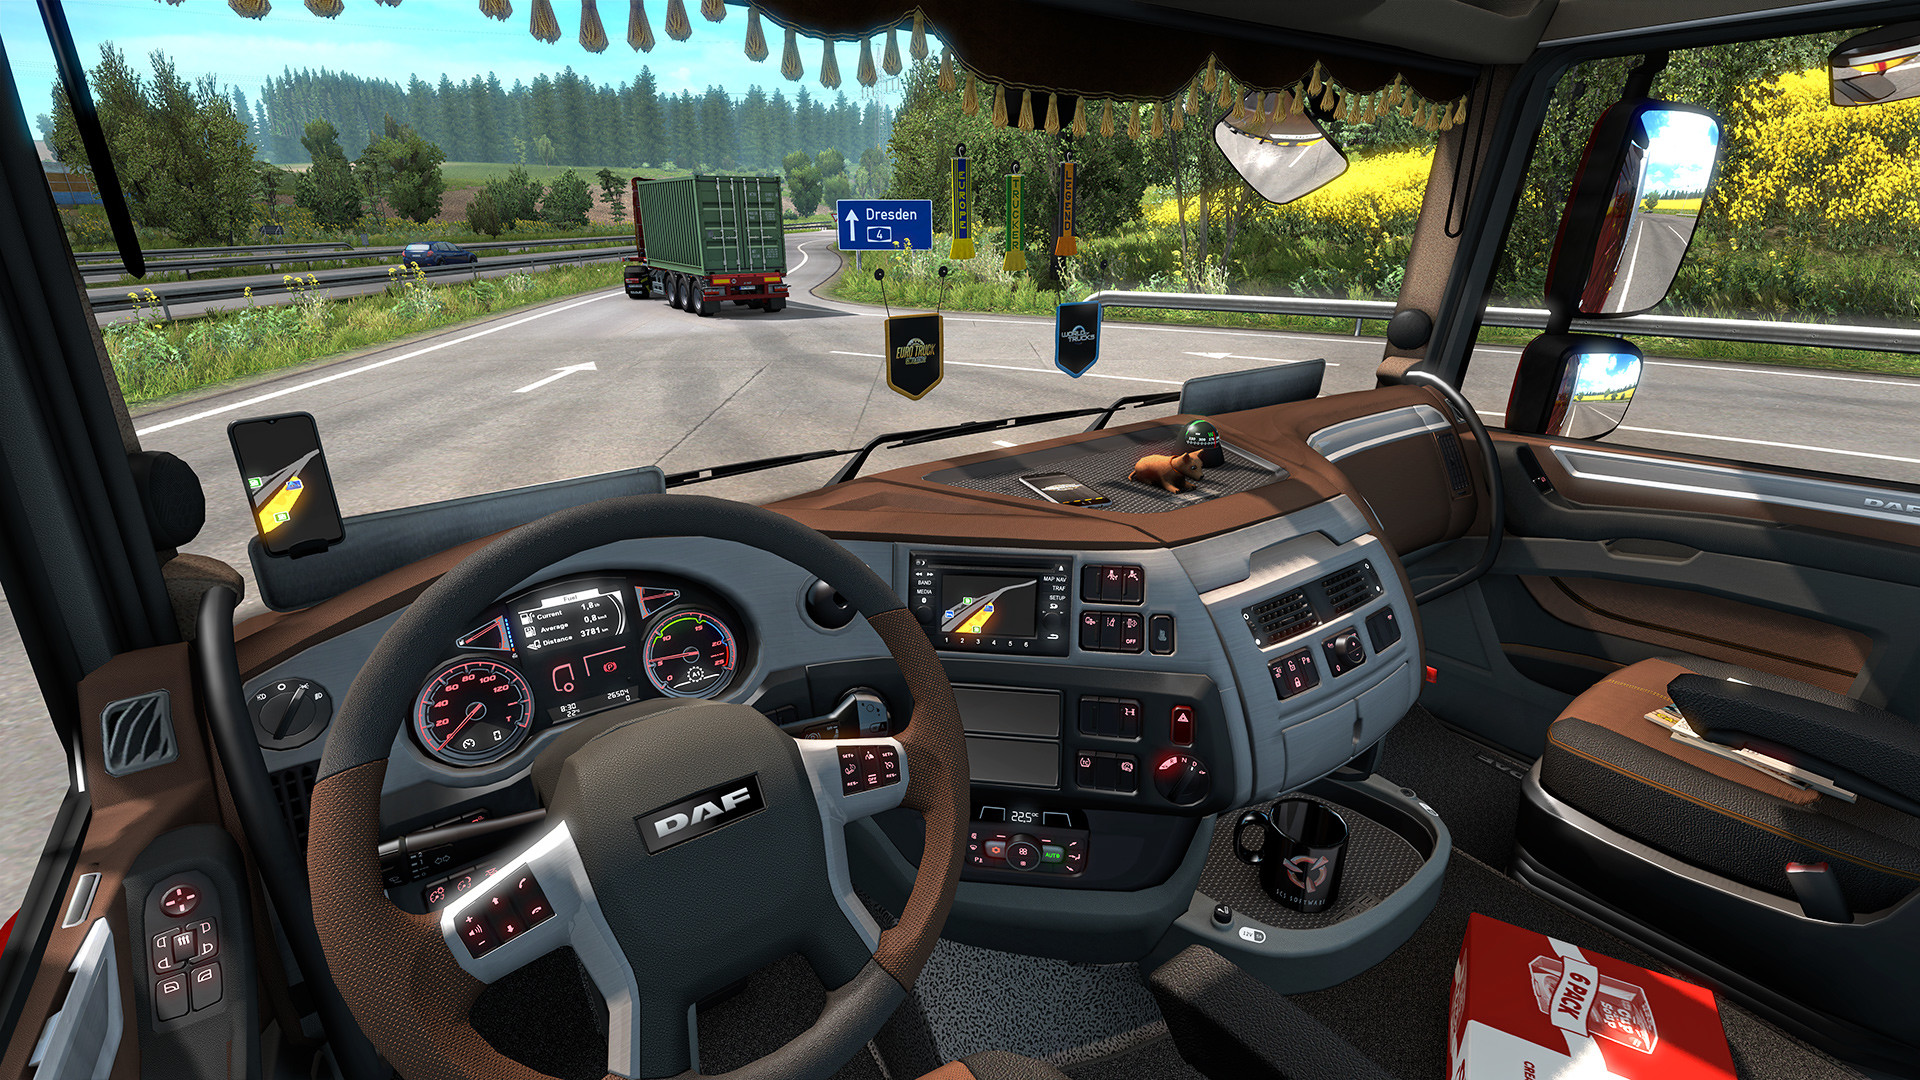 Euro Truck Simulator 2 - Cabin Accessories Featured Screenshot #1